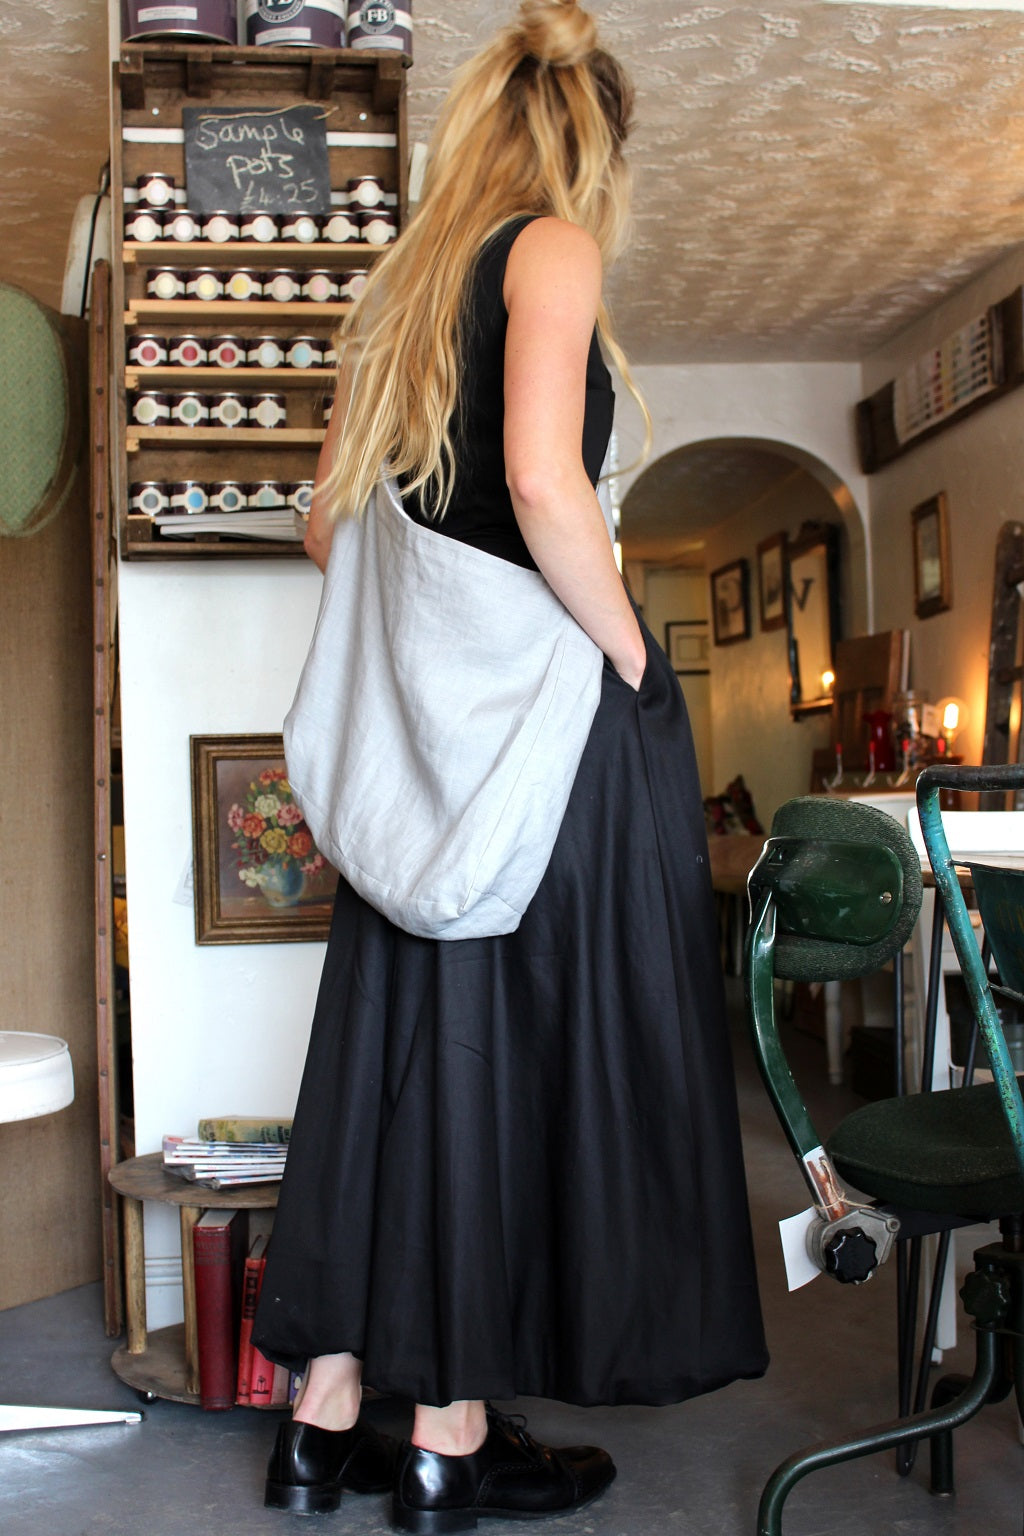 Paris - cotton long dress with bubble hem